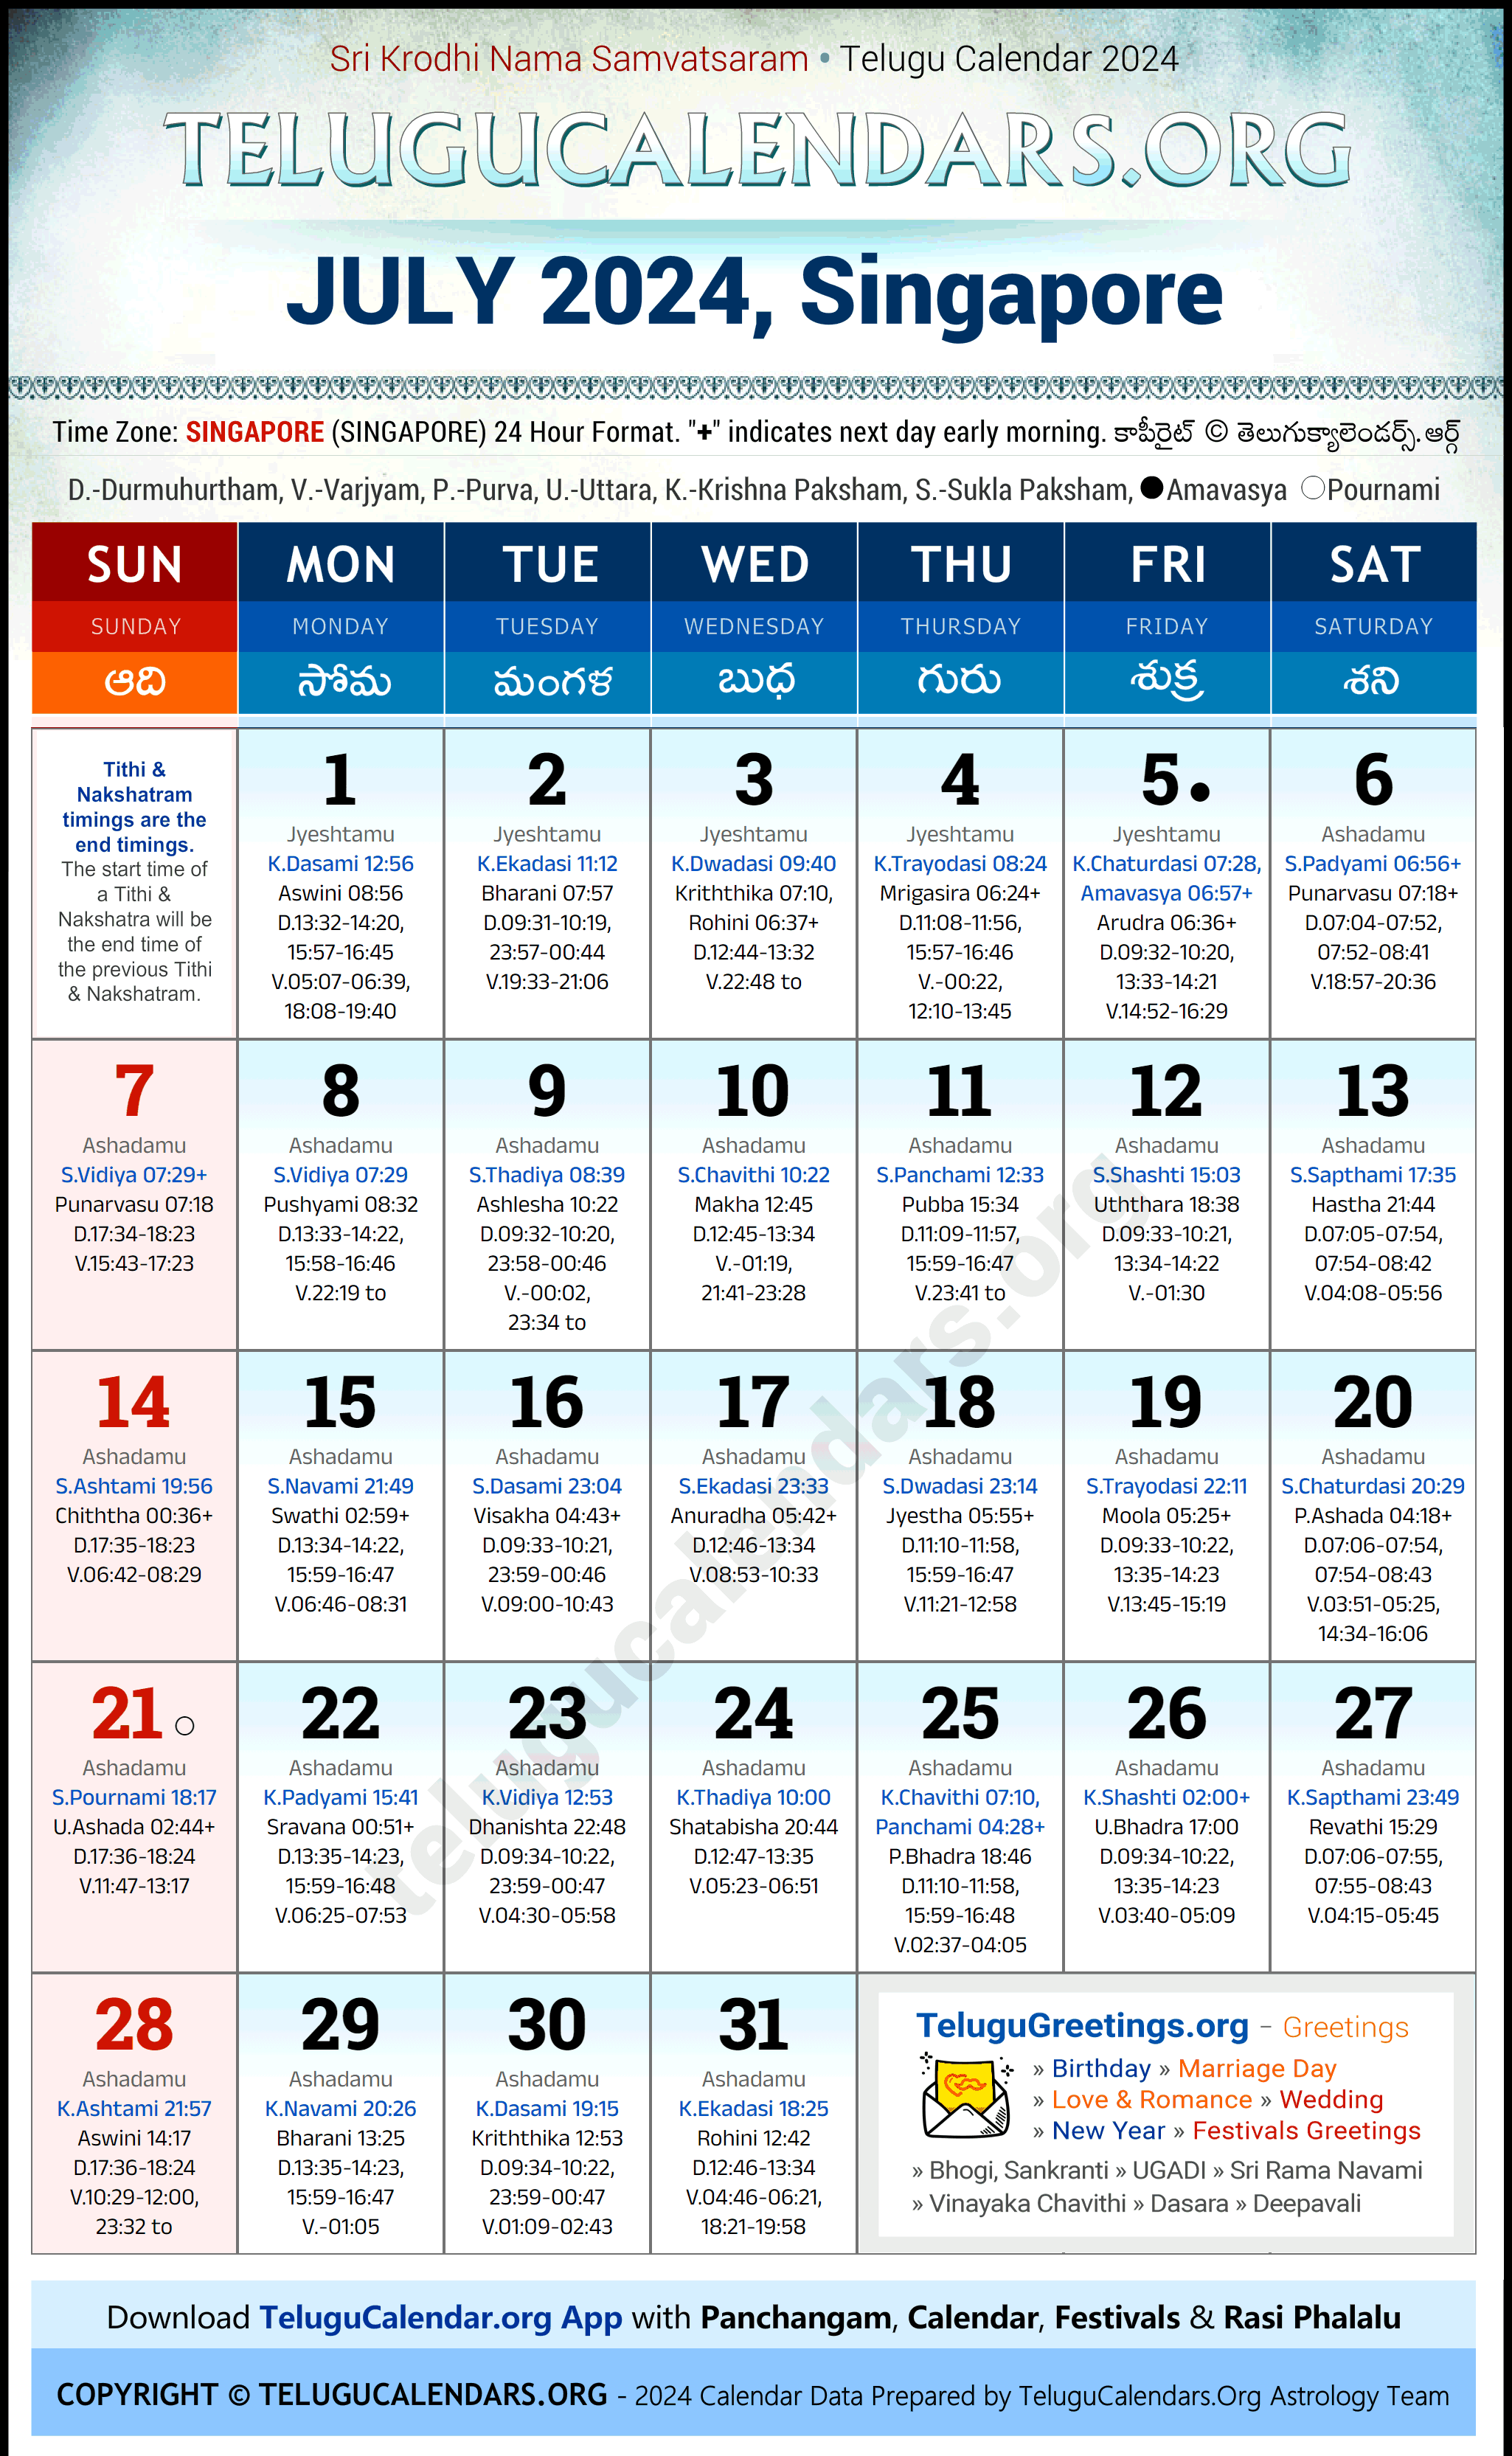 Telugu Calendar 2024 July Festivals for Singapore